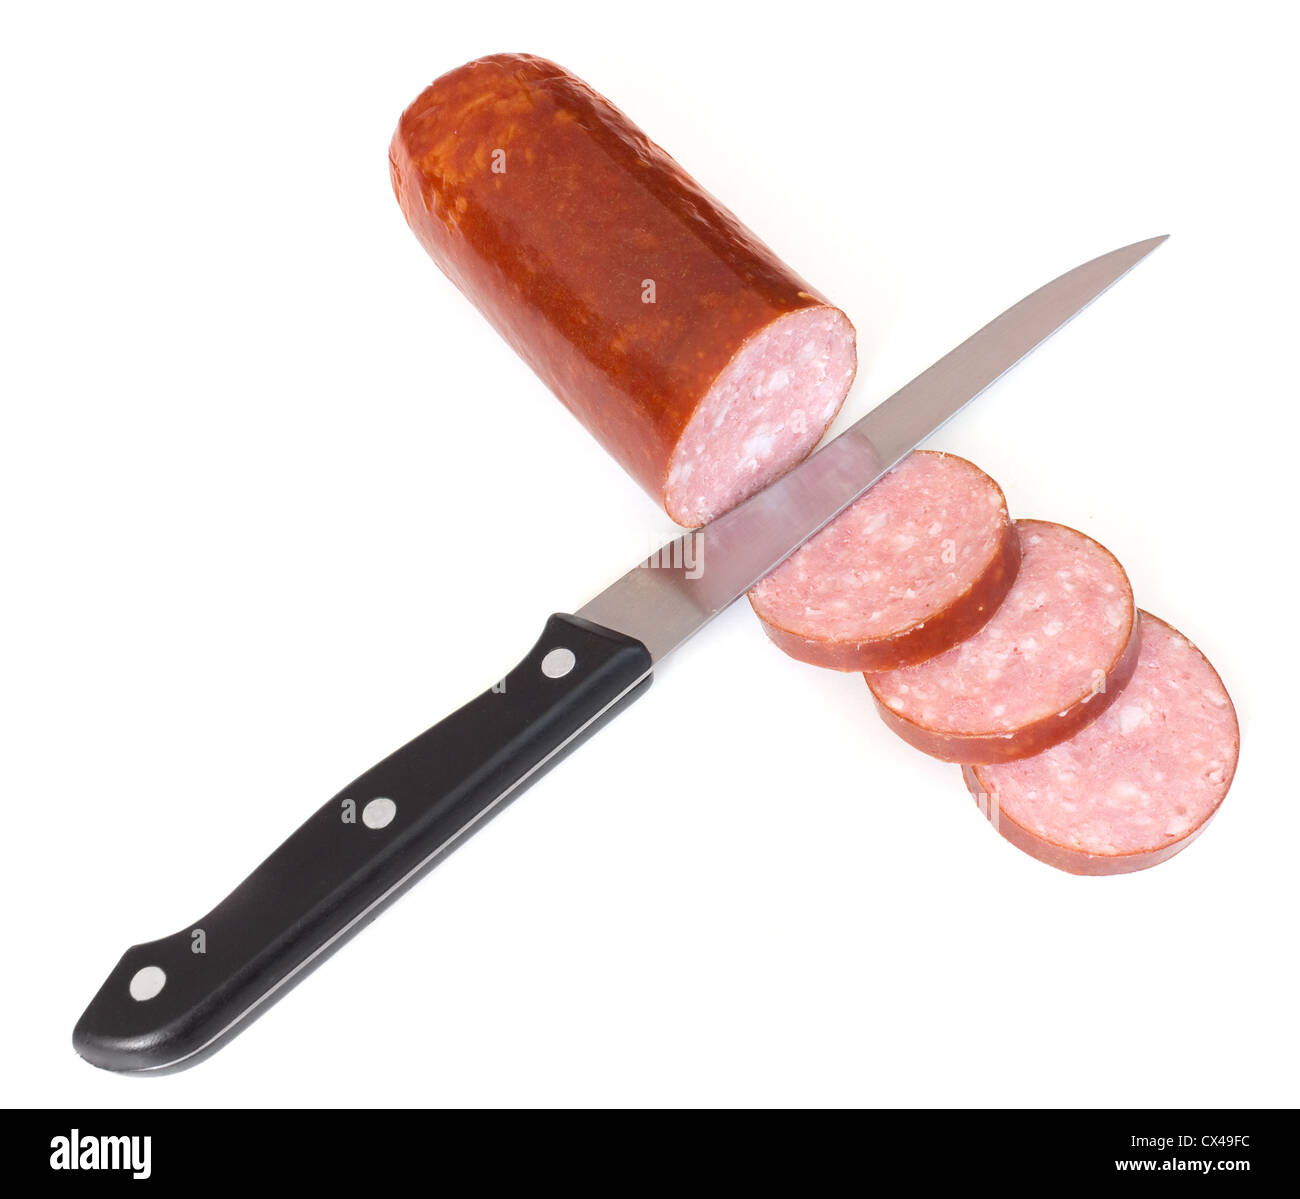 Sliced smoked sausage Stock Photo